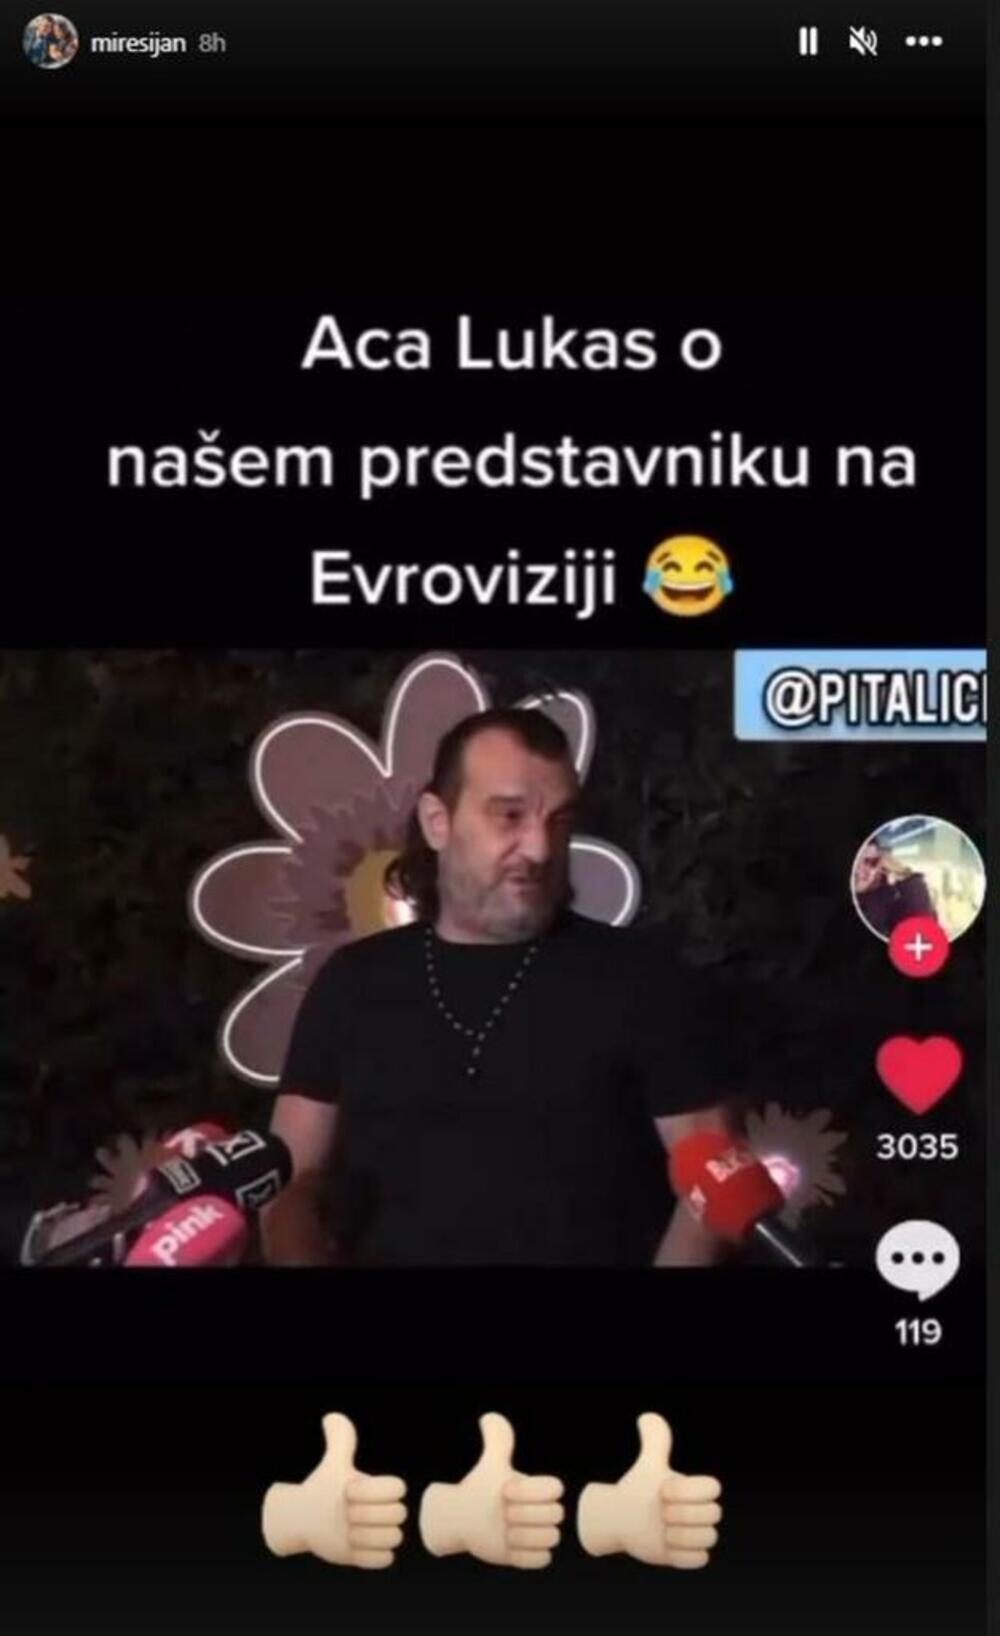 Luka Blejk, Pejić Jovan, Aca Lukas